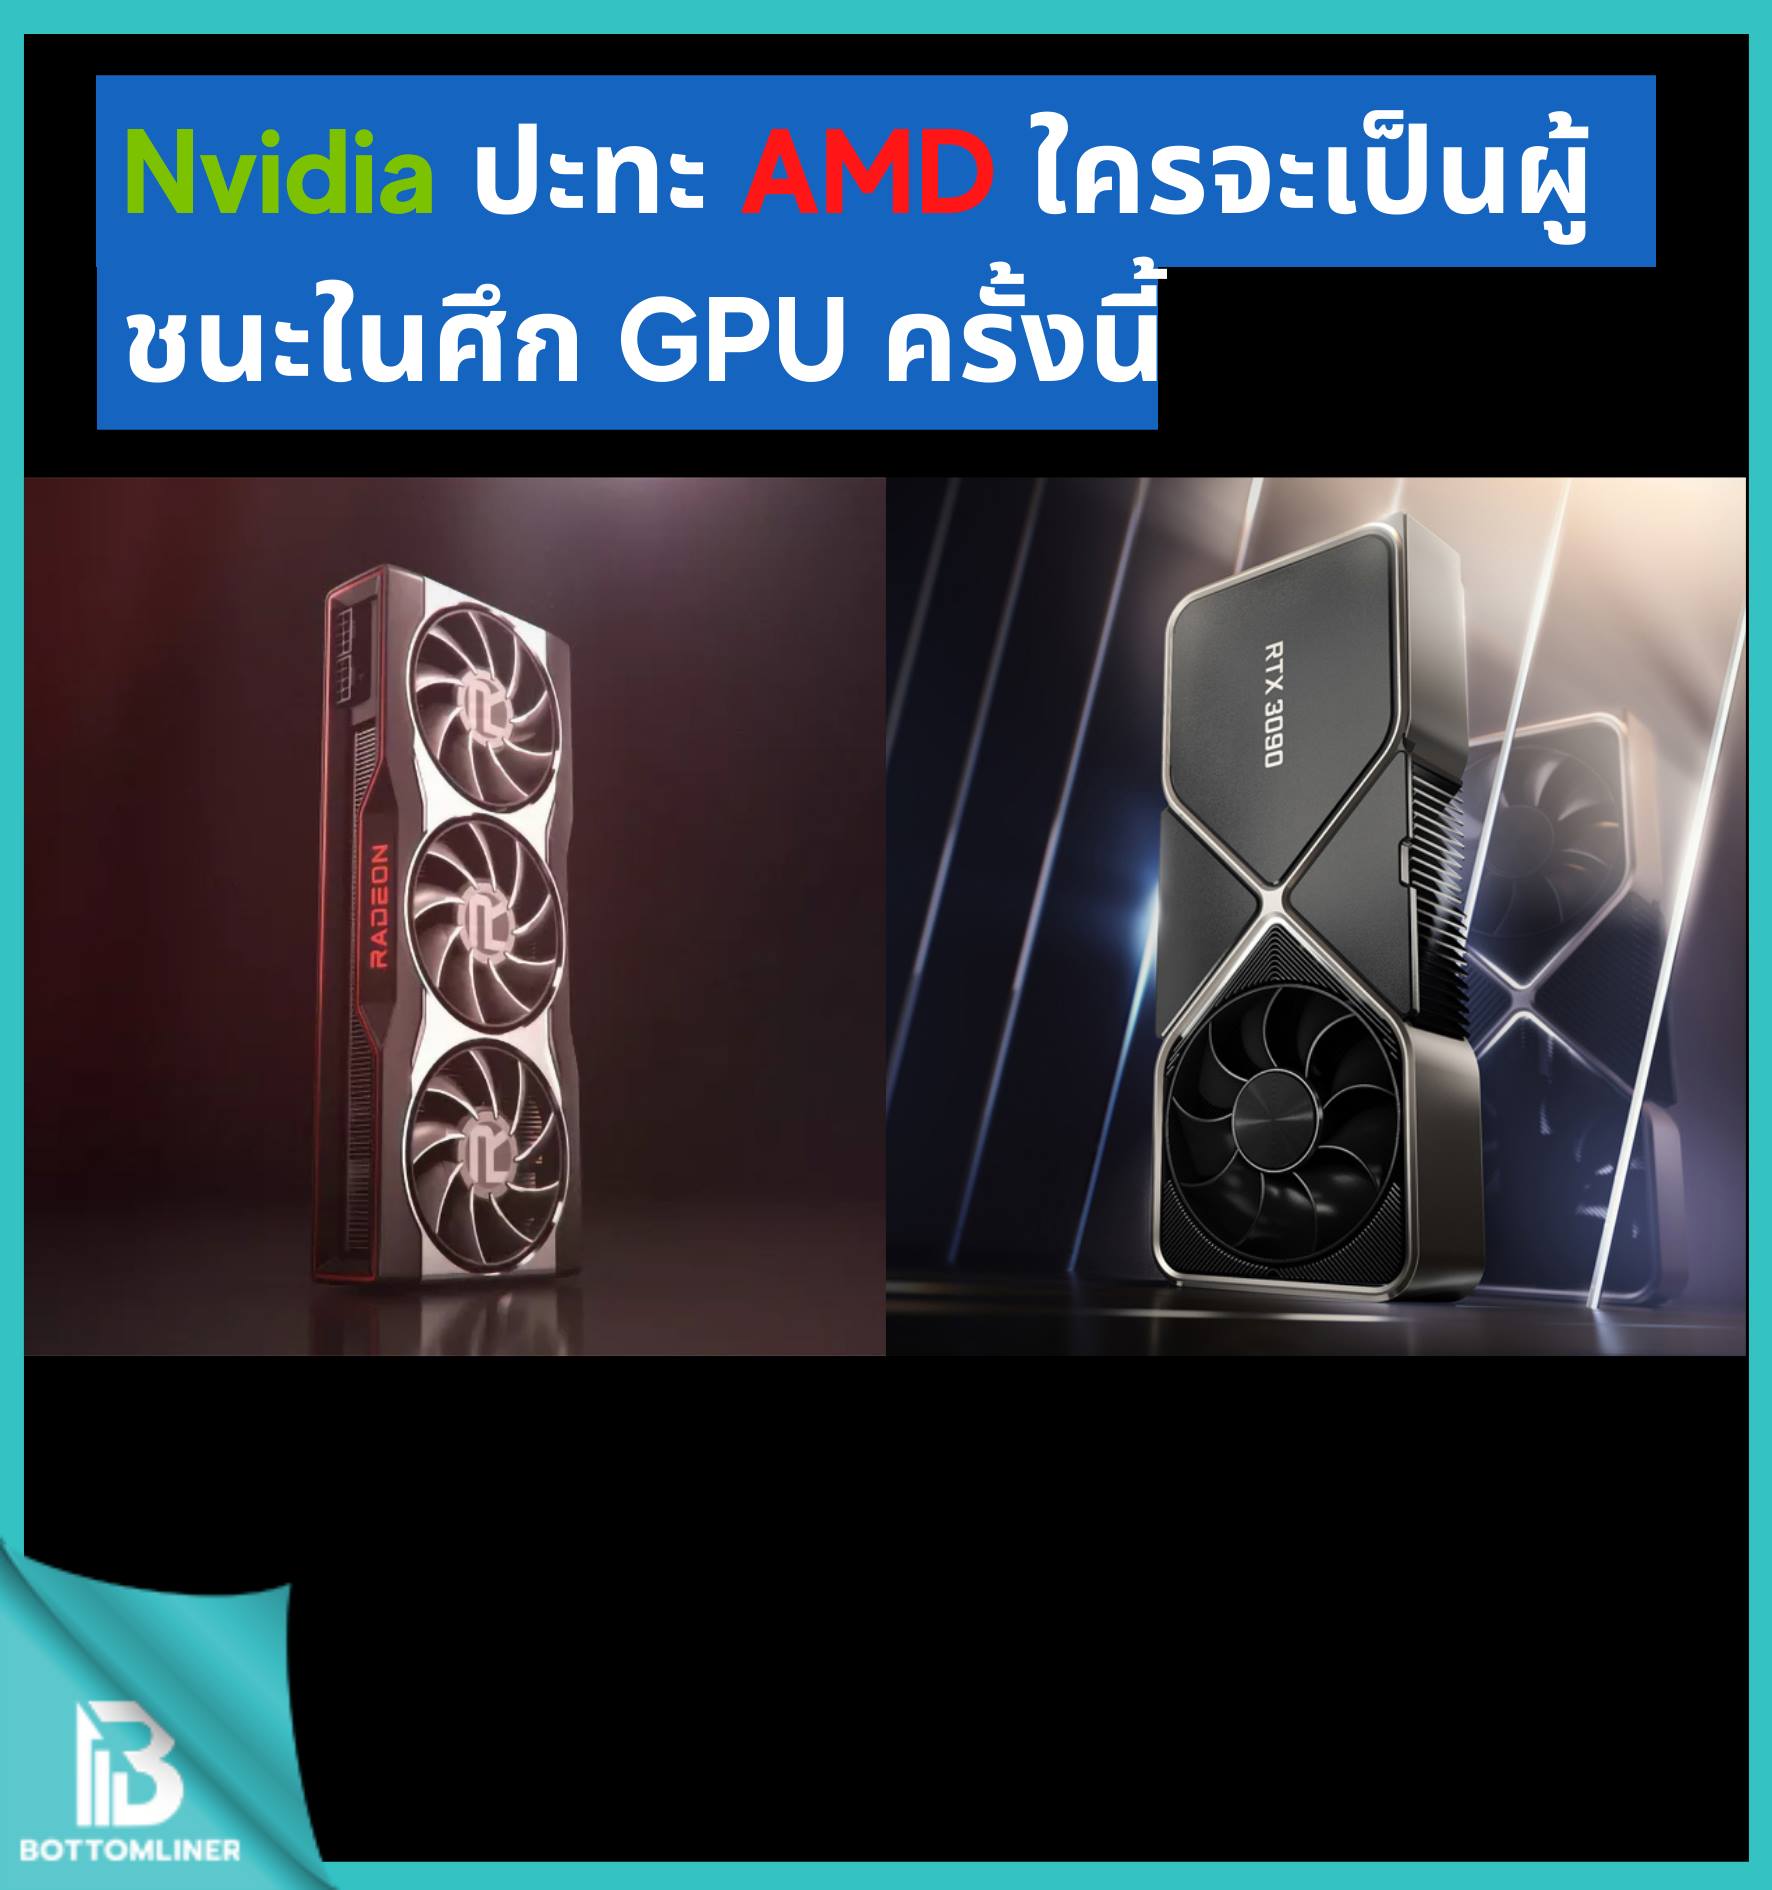 Nvidia ปะทะ AMD ใครจะเป็นผู้ชนะในศึก GPU ครั้งนี้